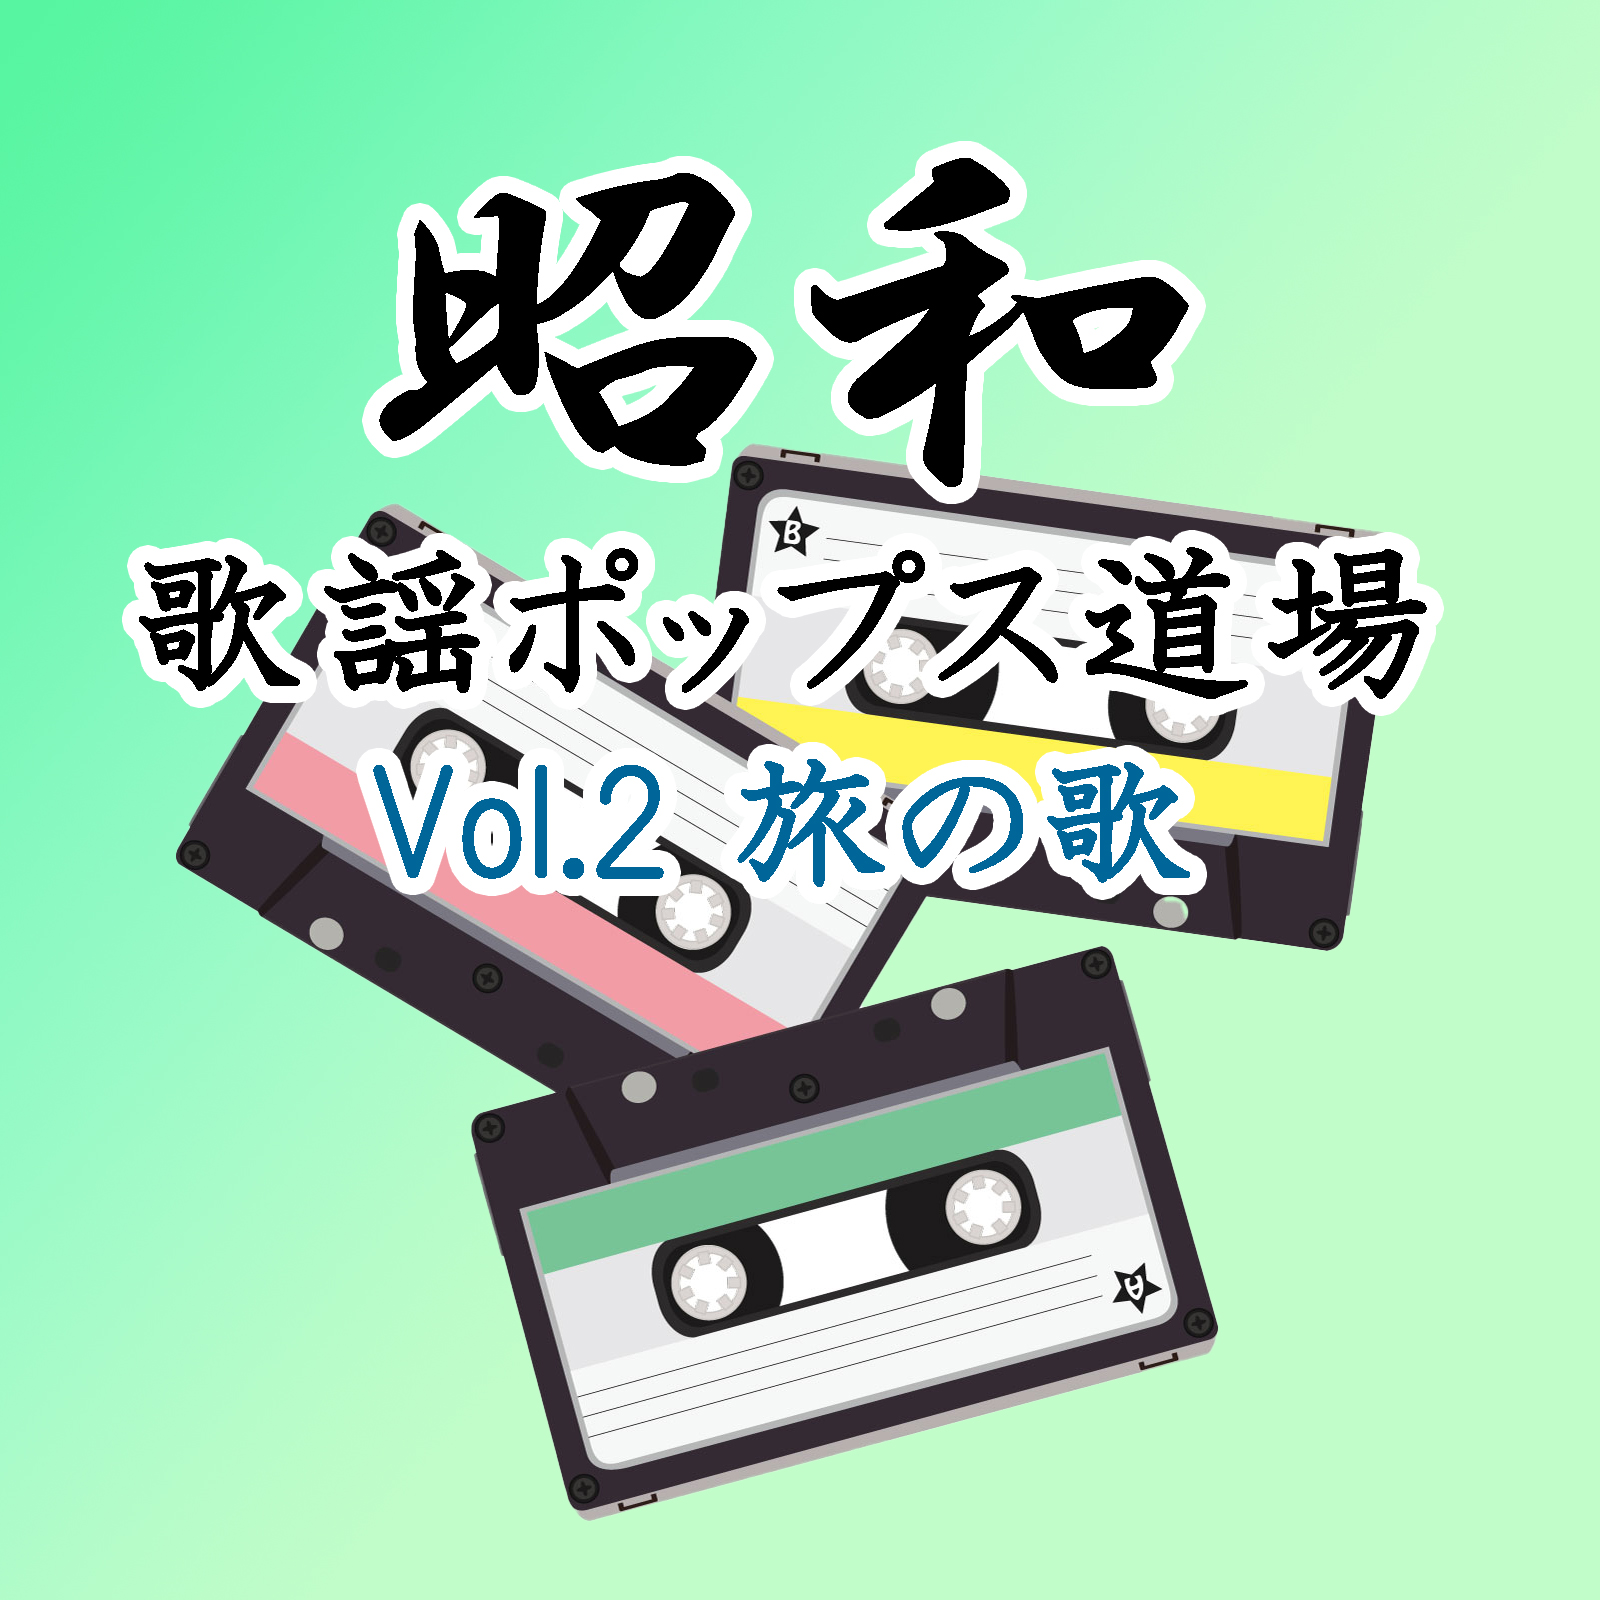 昭和歌謡ポップス道場 Vol.2 旅の歌